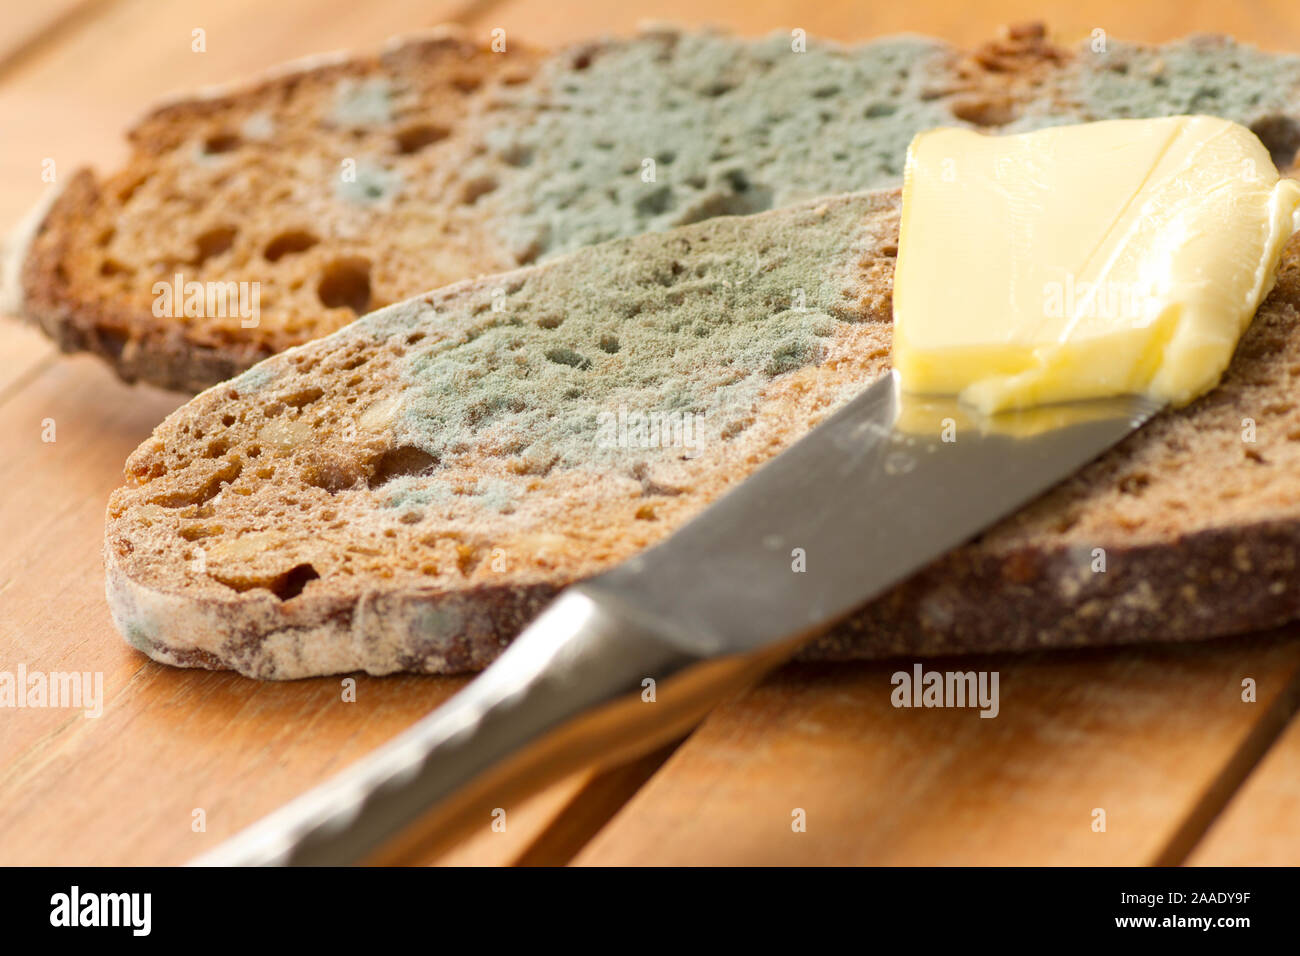 verrschimmeltes Brot Stock Photo